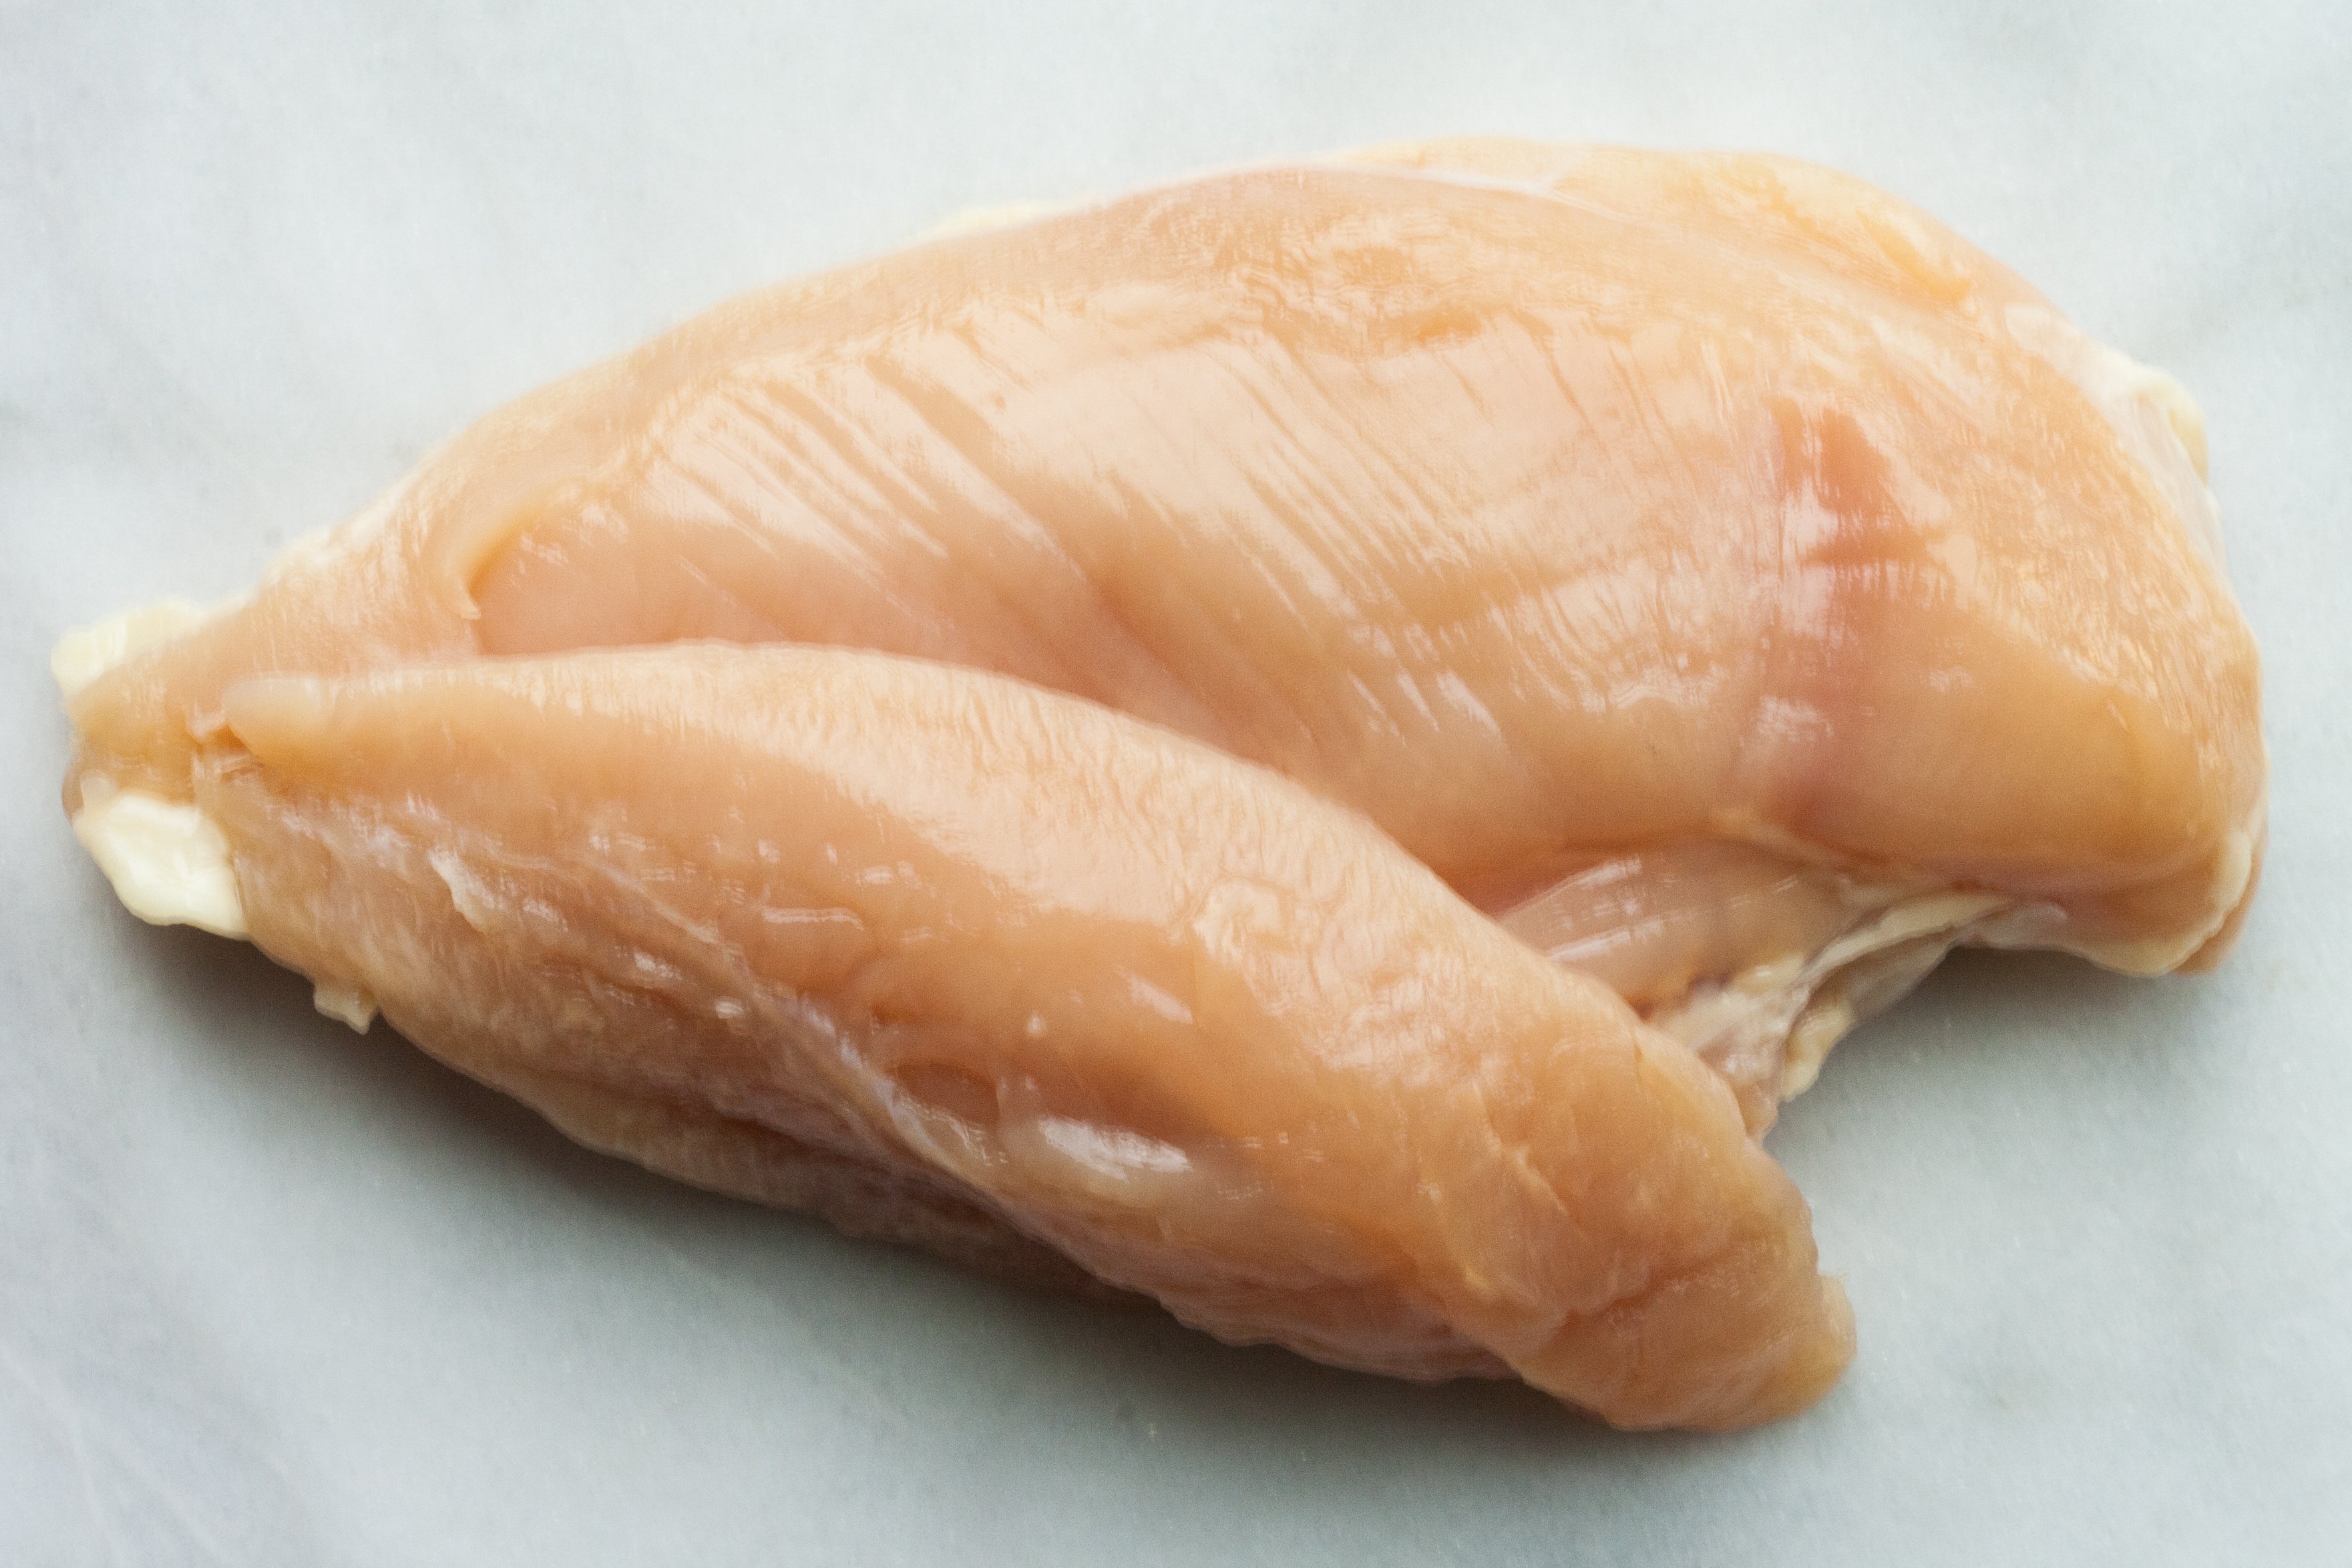   Ức gà là một trong nhiều loại thực phẩm giàu protein giúp tăng cường cơ bắp hiệu quả  